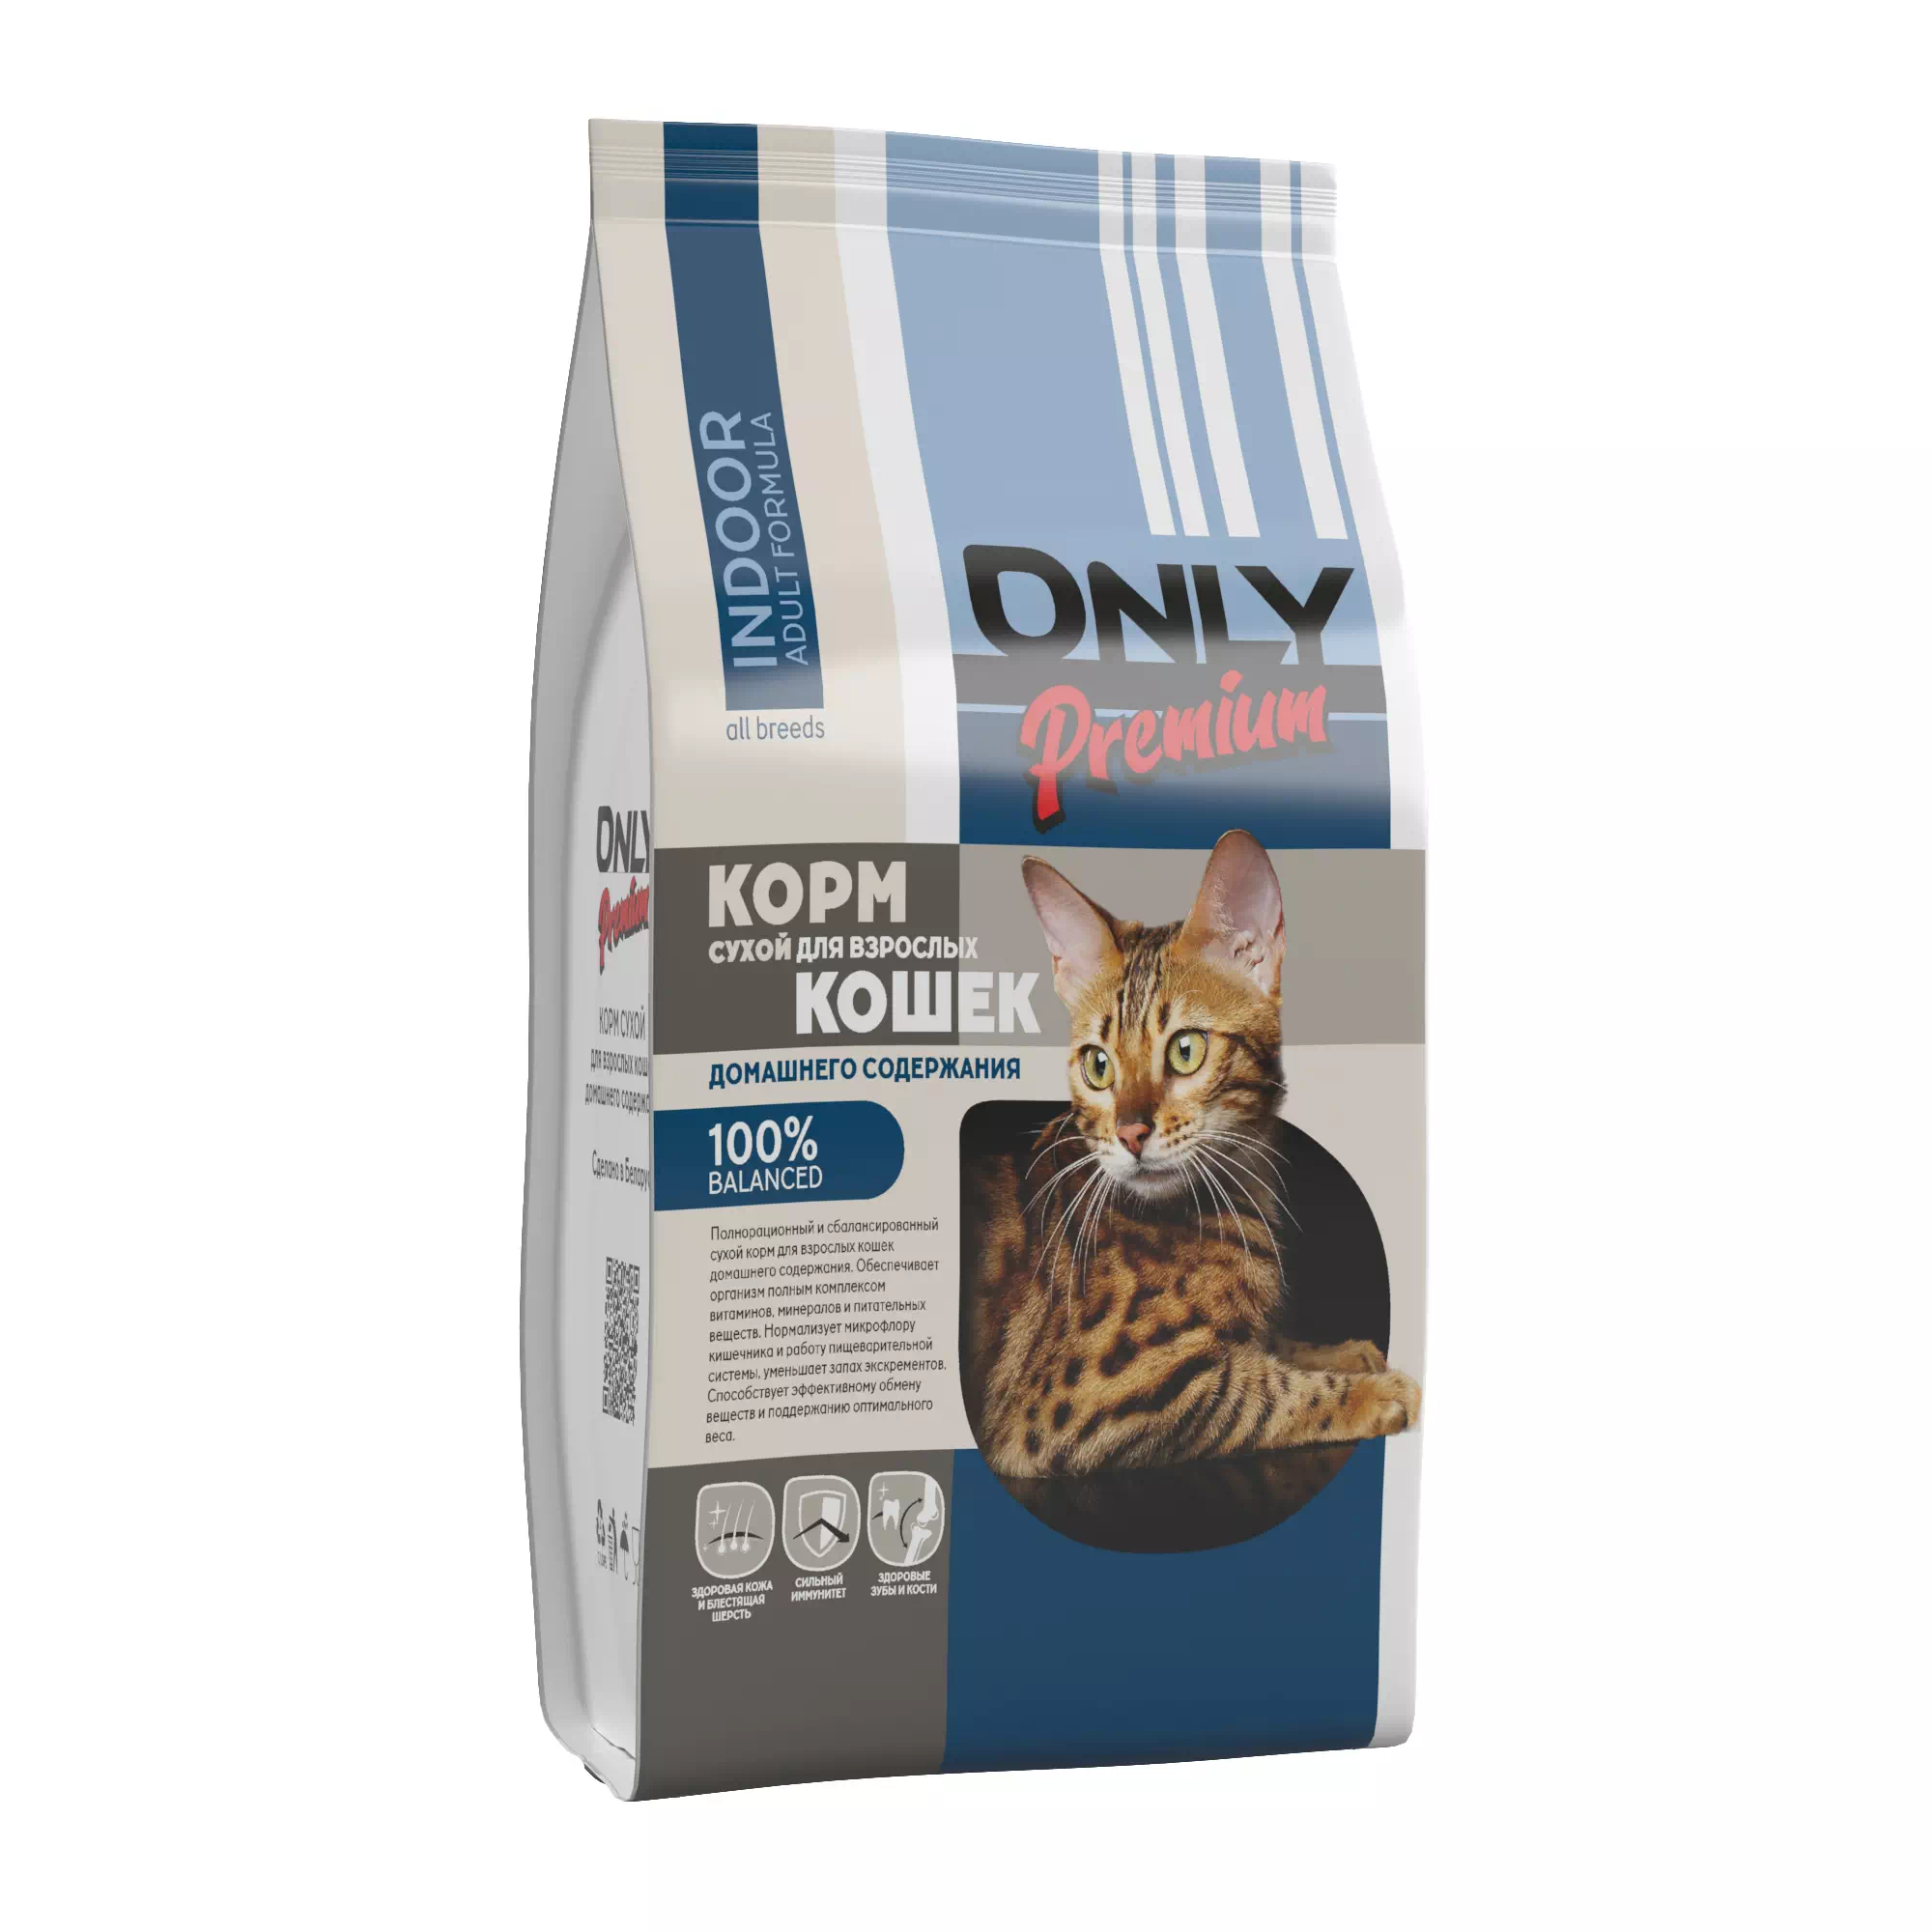 «ONLY» Премиум корм сухой полнорационный для кошек домашнего содержания